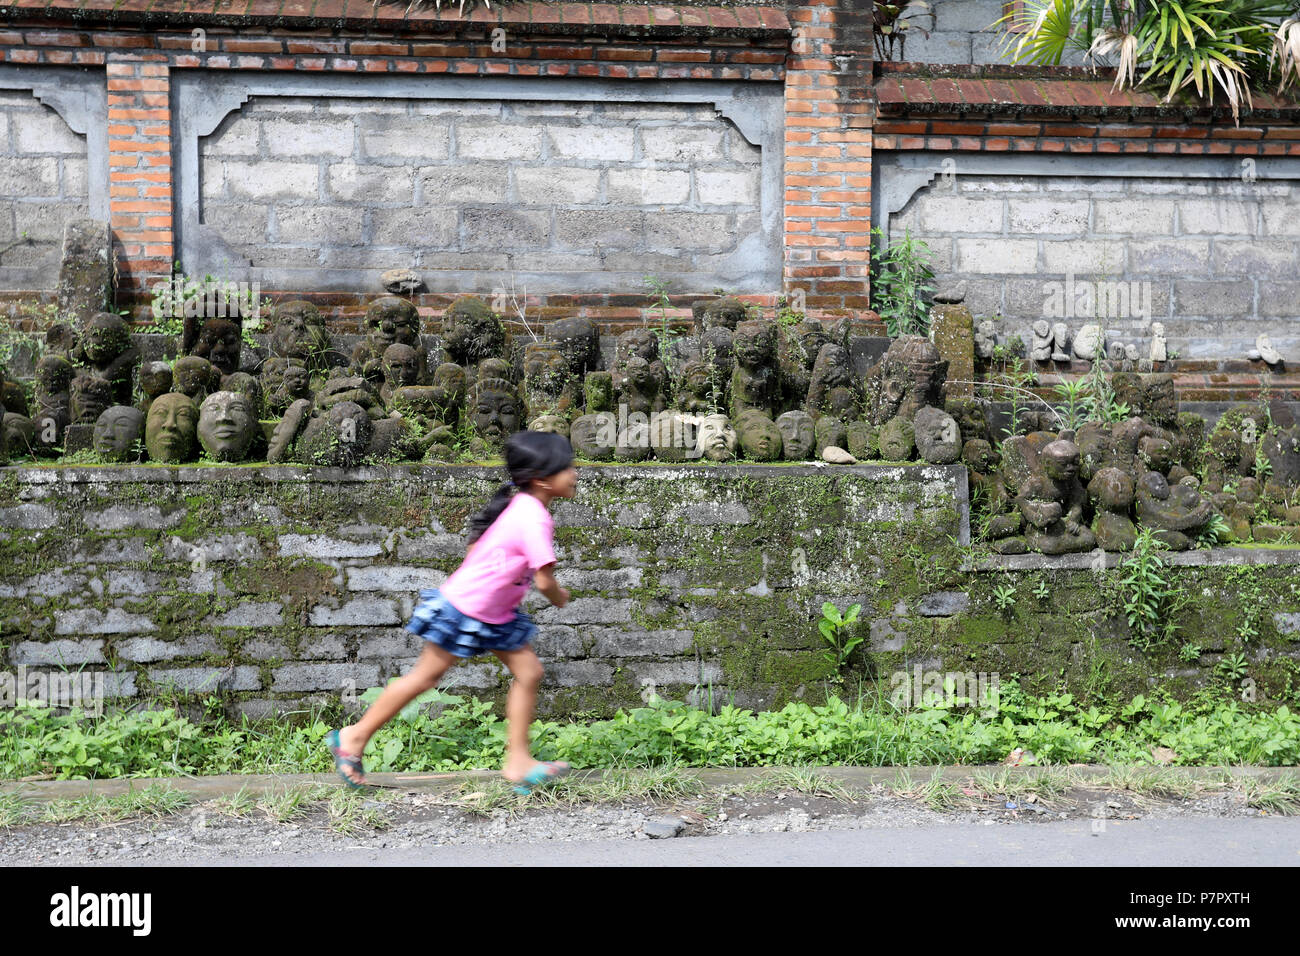 Ubud, Indonésie - le 28 juin 2018 : Une jeune fille court le long d'une voie passé une collection de masques en pierre, à la périphérie de Ubud sur l'île de Bali, Indon Banque D'Images